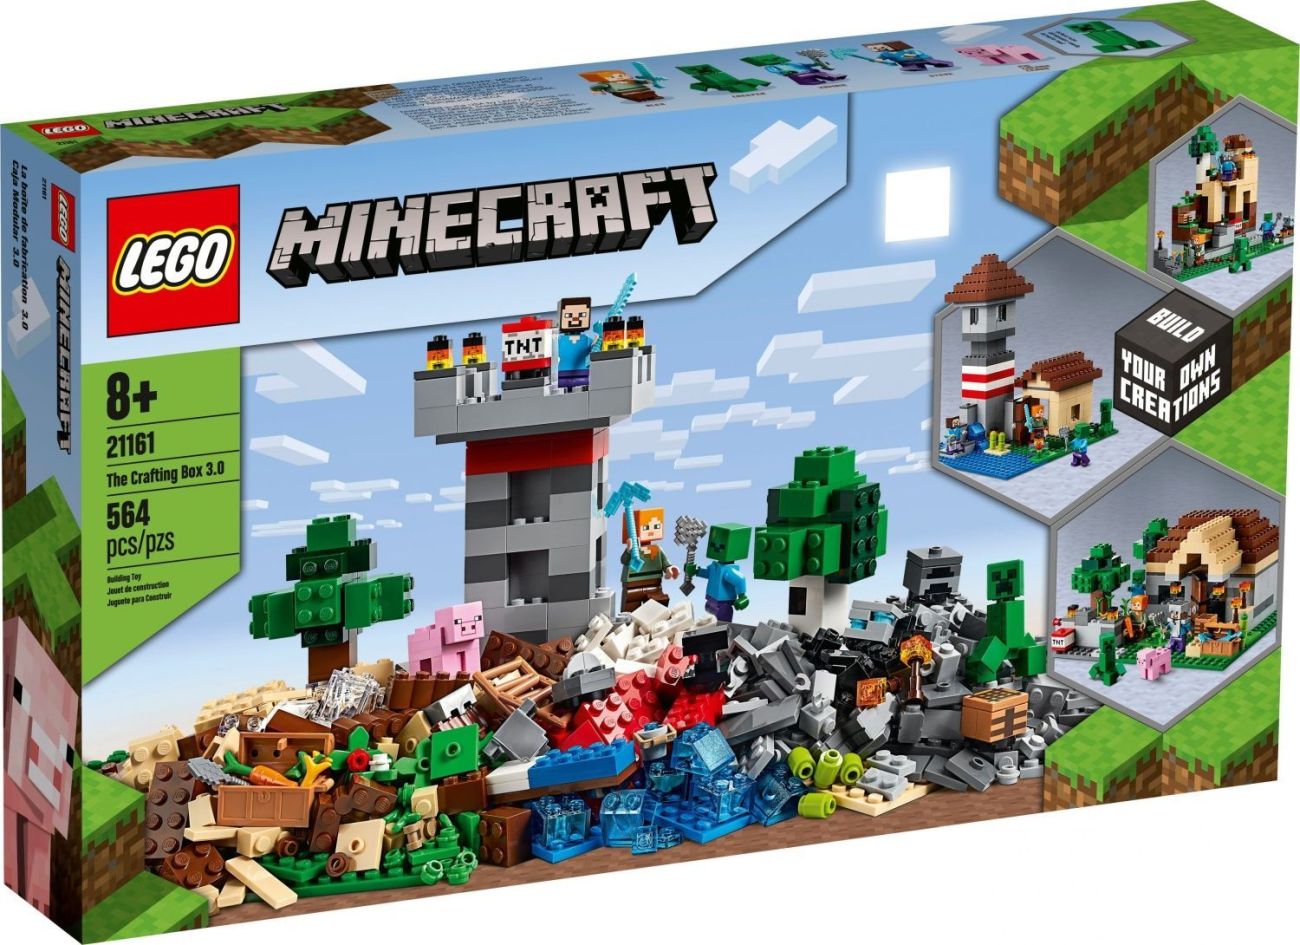 LEGO Minecraft 21161 The Crafting Box 3.0 - Box 1 (Foto: LEGO)